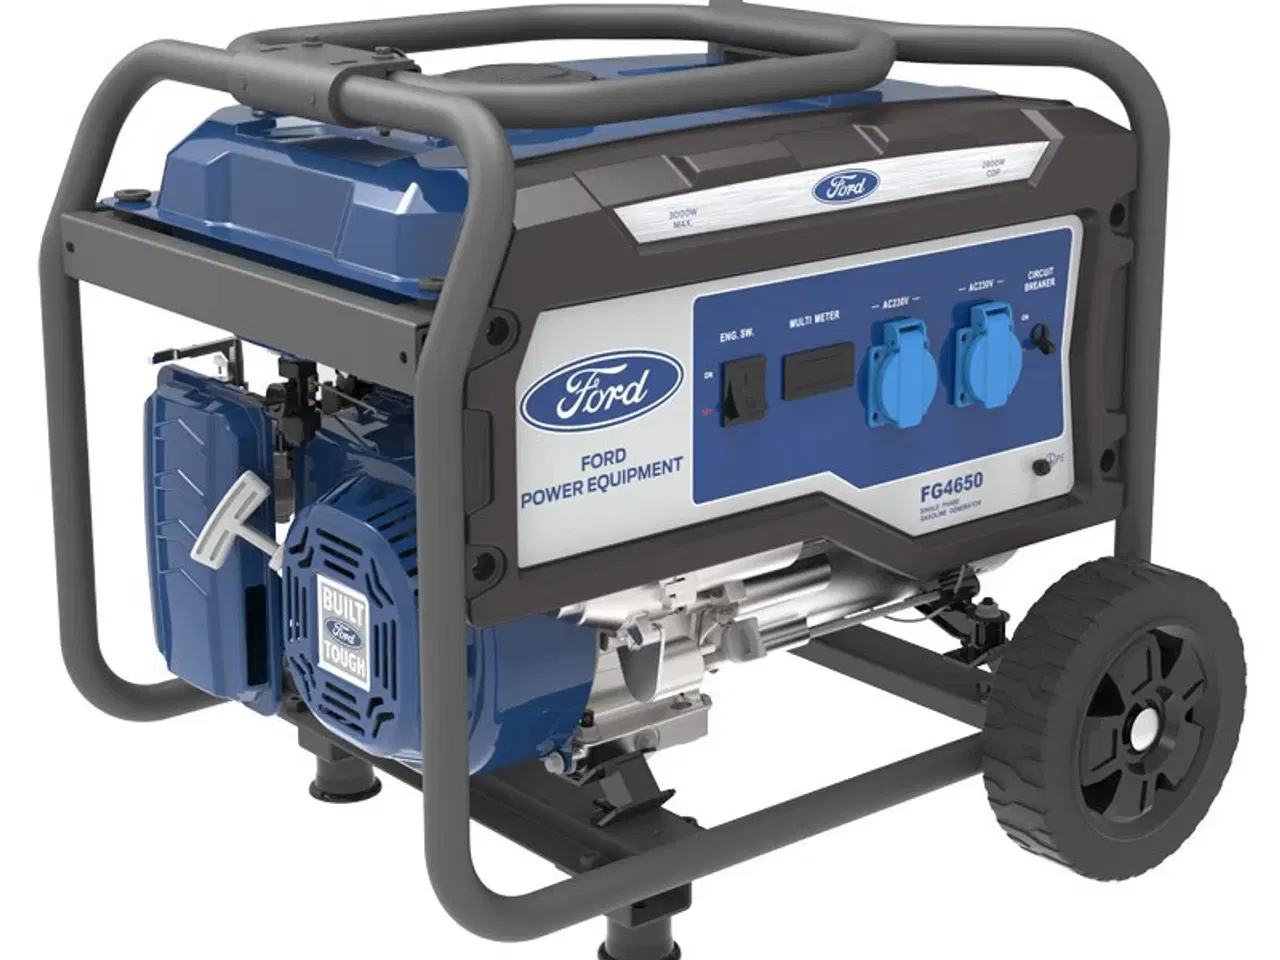 Billede 1 - Ford generator - 3000 watt